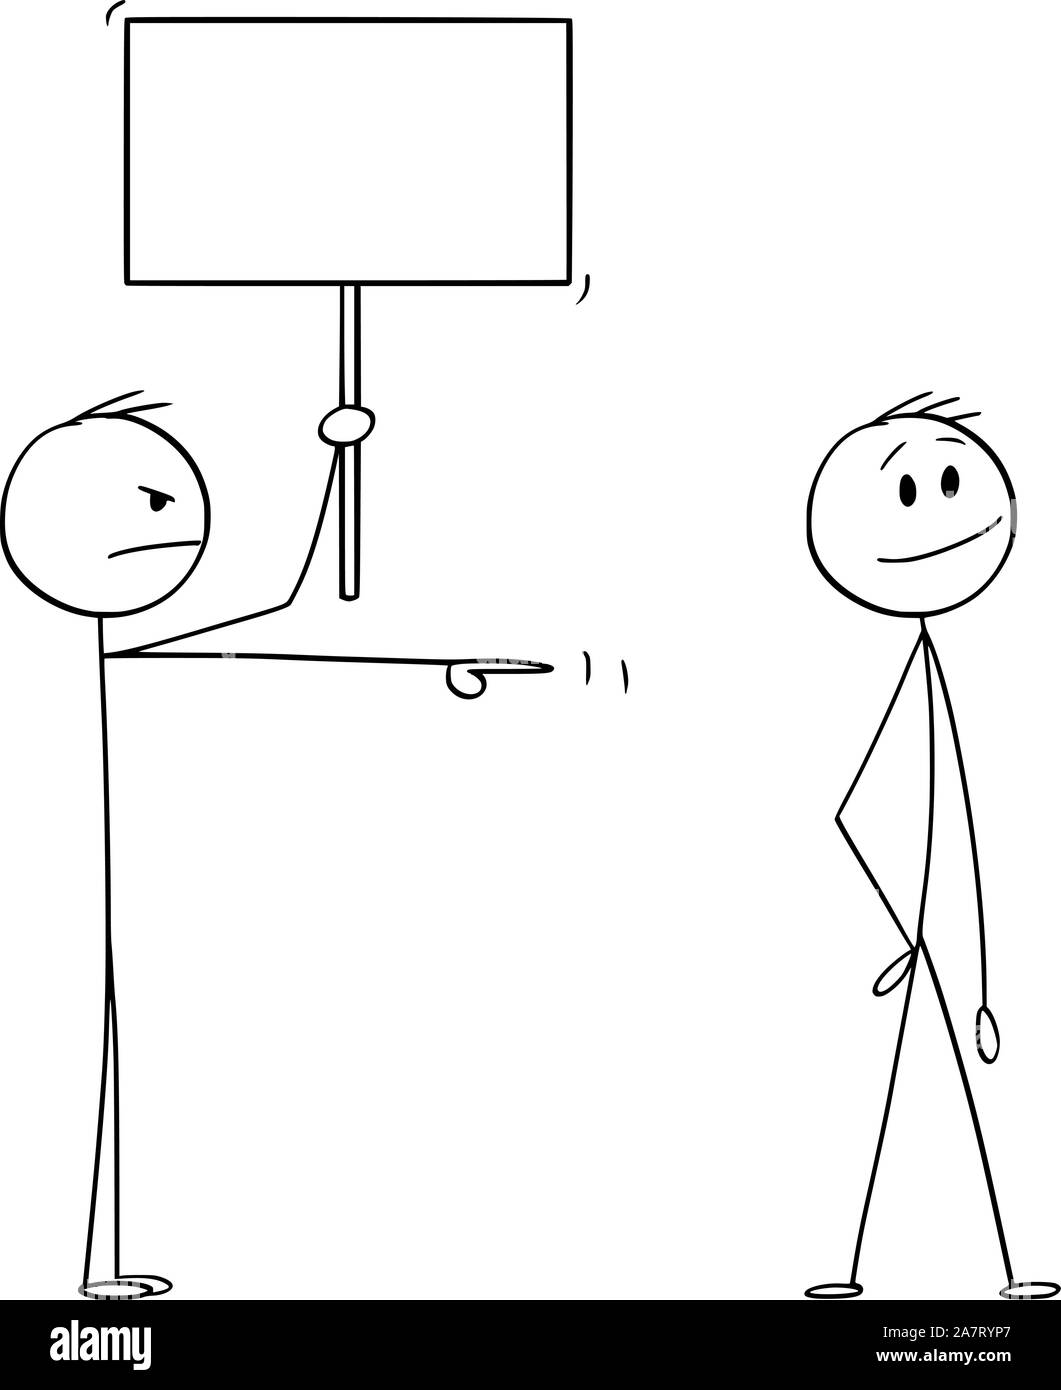 Vektor cartoon Strichmännchen Zeichnen konzeptionelle Darstellung der zornigen Mann oder Geschäftsmann mit leeren Zeichen an lächelnden Mann zeigt. Stock Vektor